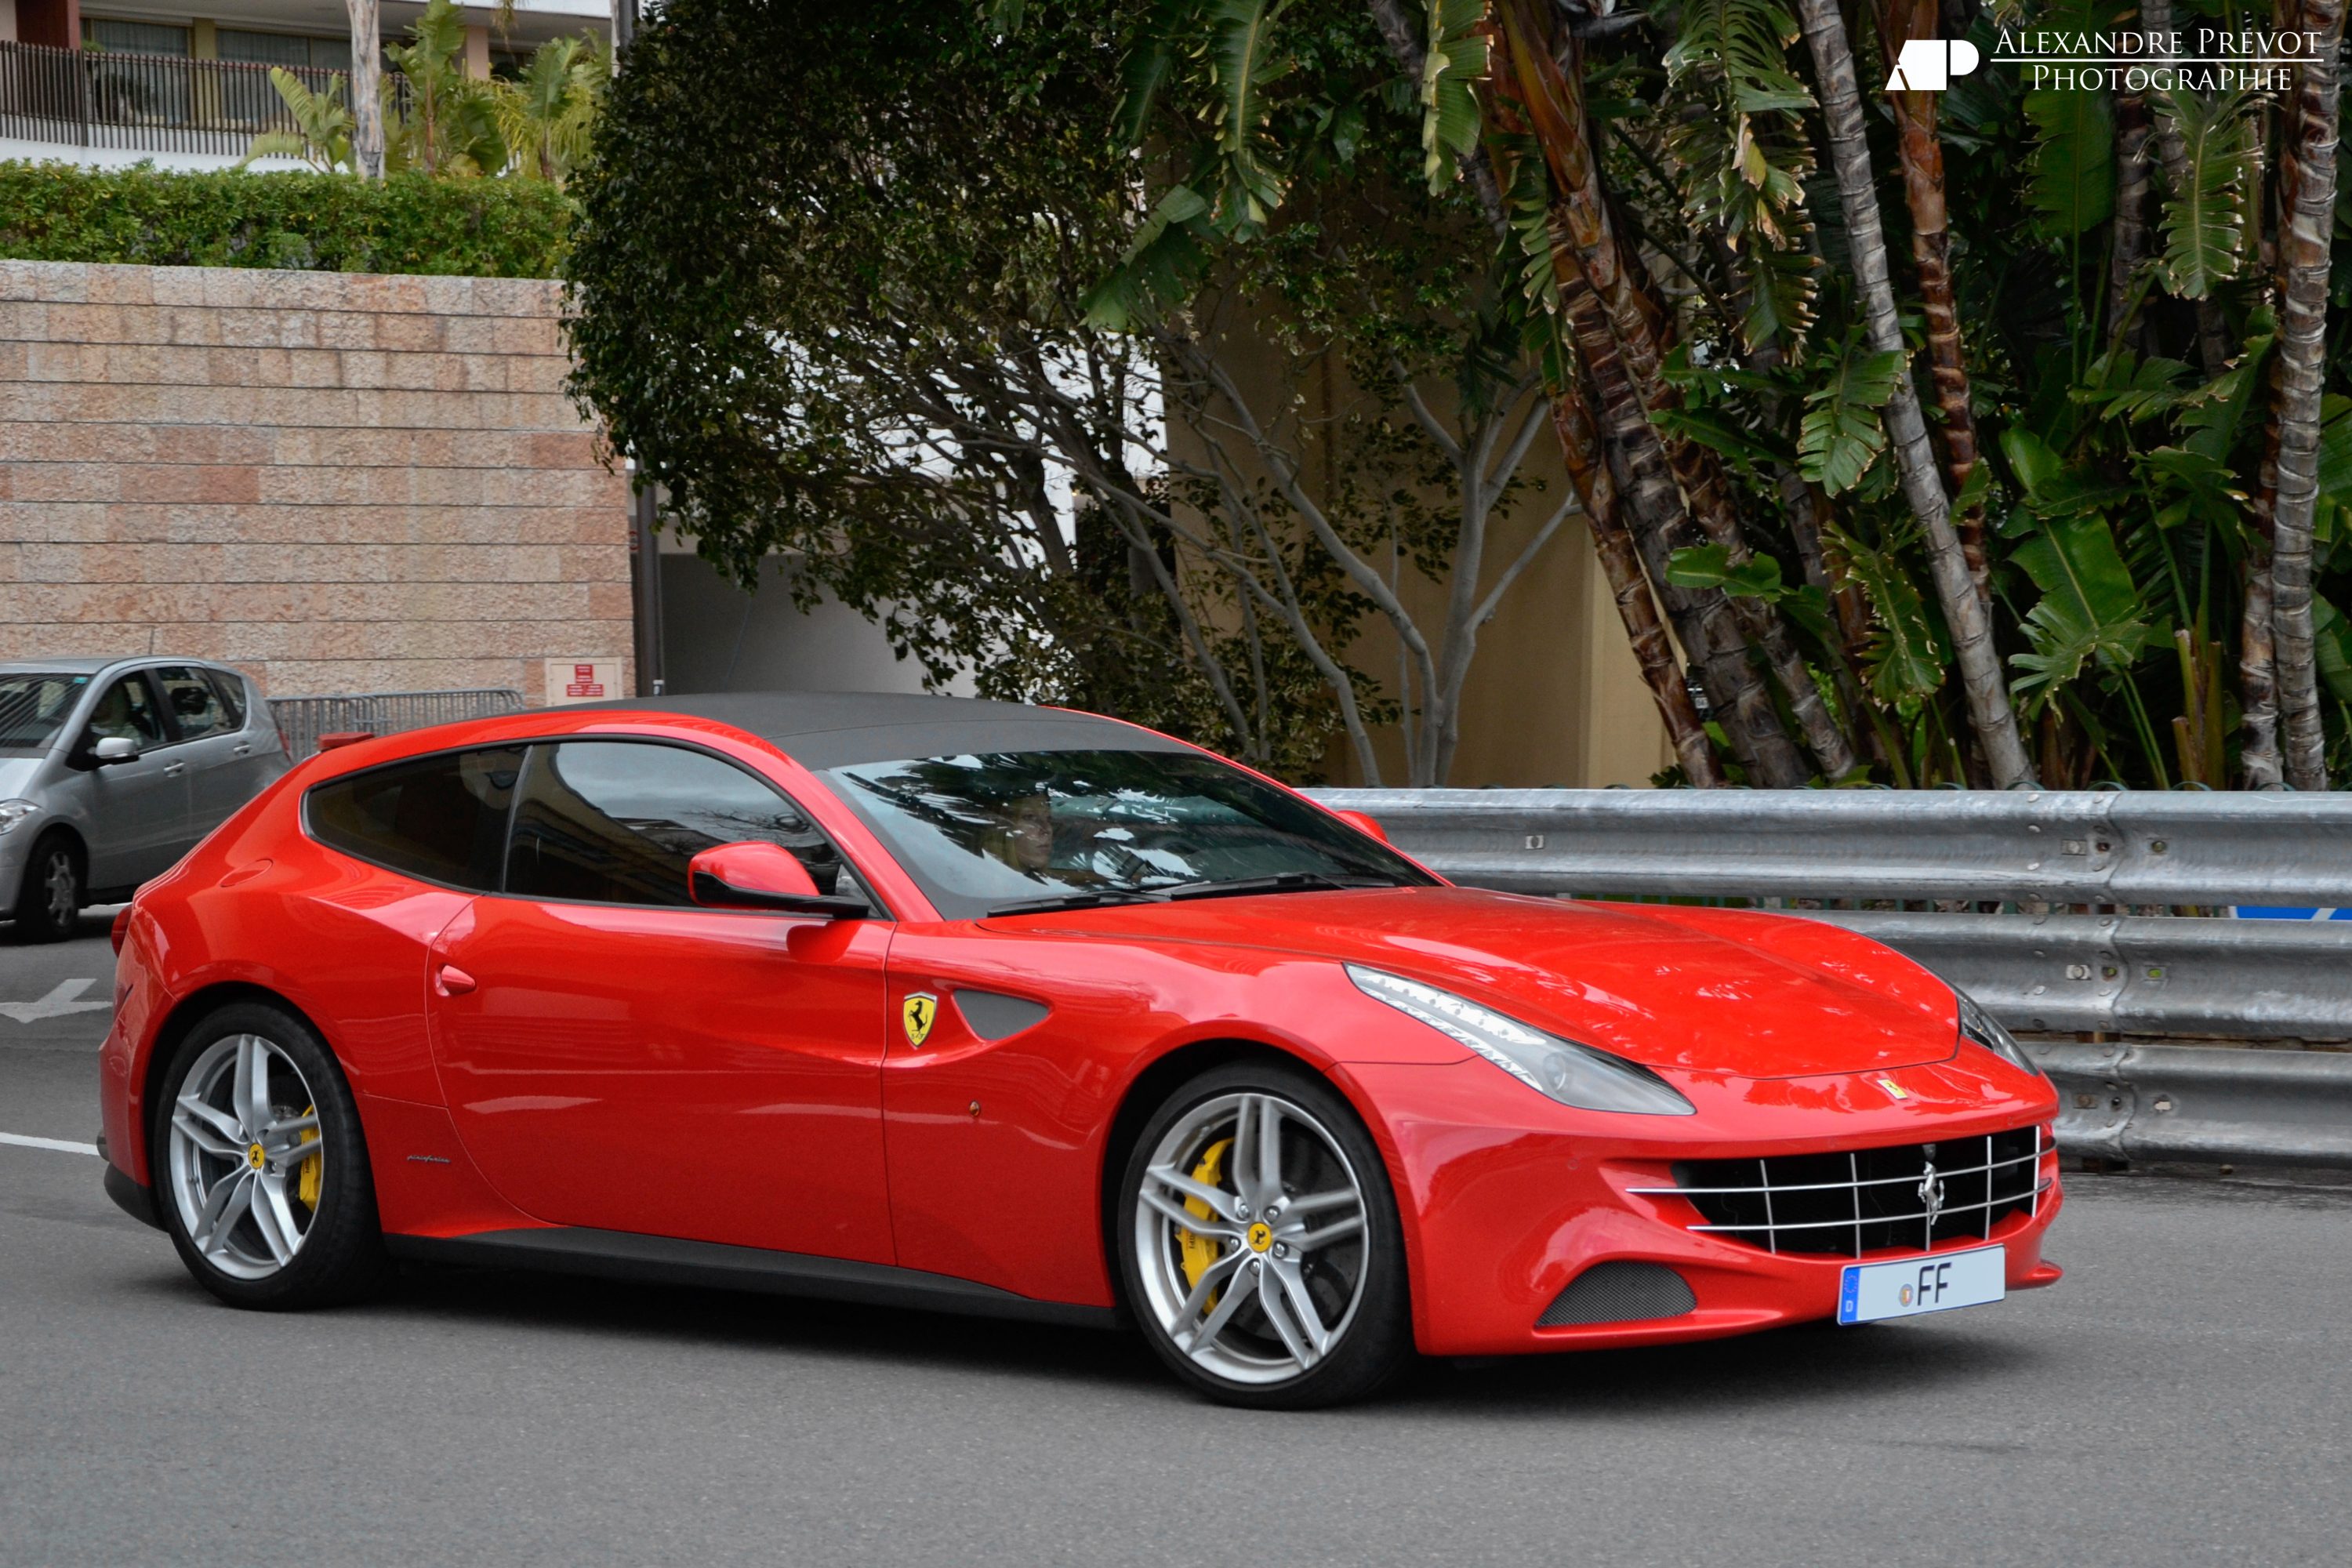 Ferrari_FF_-_Flickr_-_Alexandre_Pr%C3%A9vot_(3).jpg